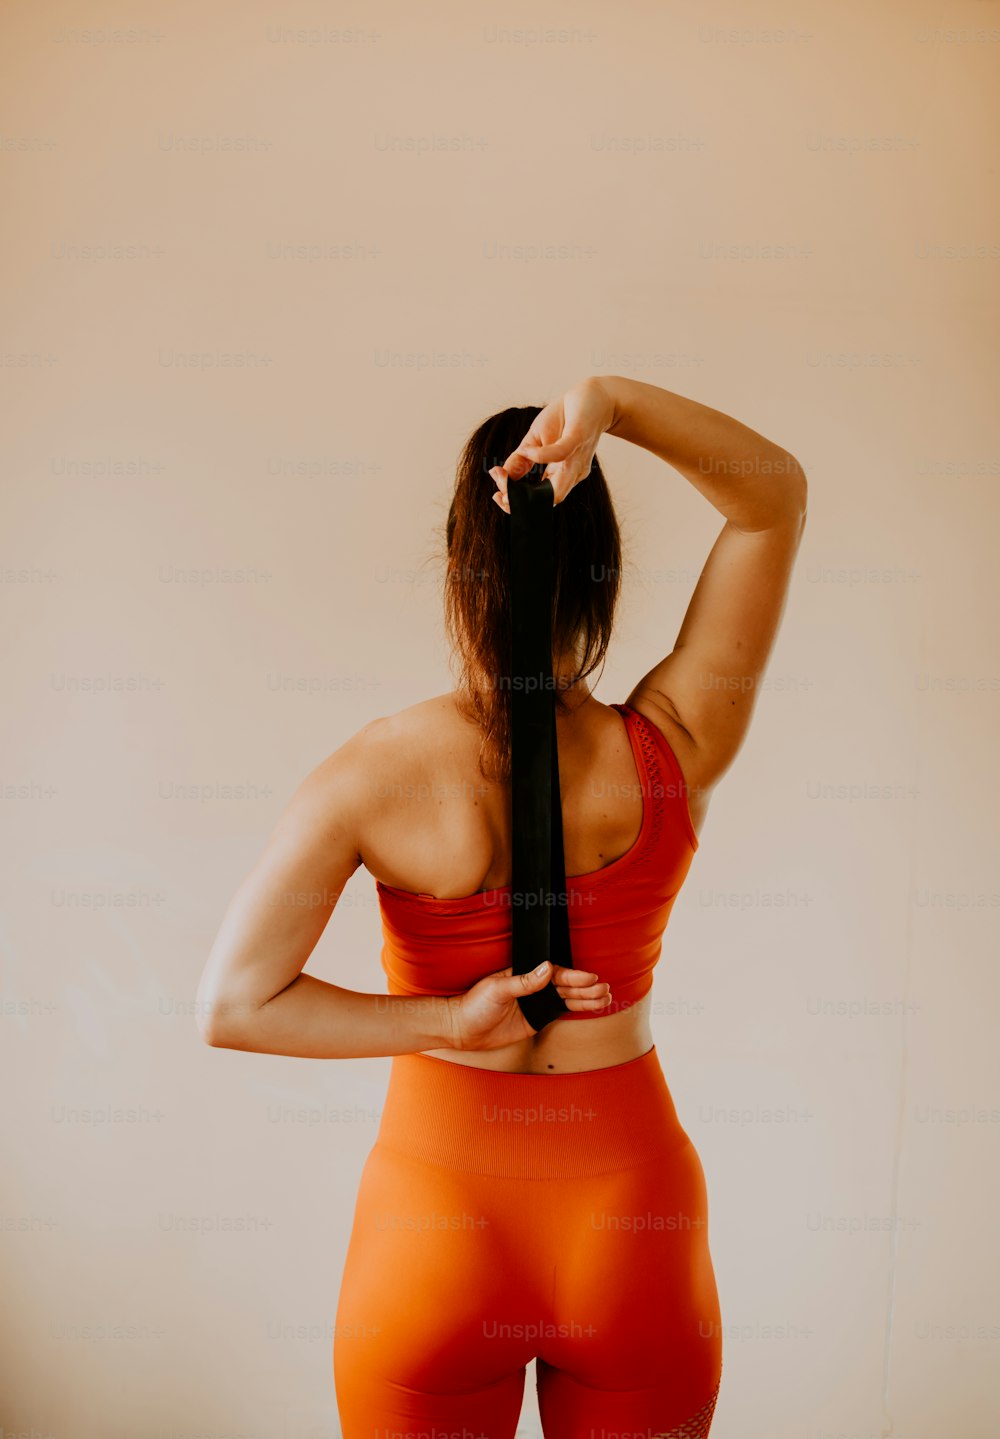 a woman in an orange sports bra is holding a black tie